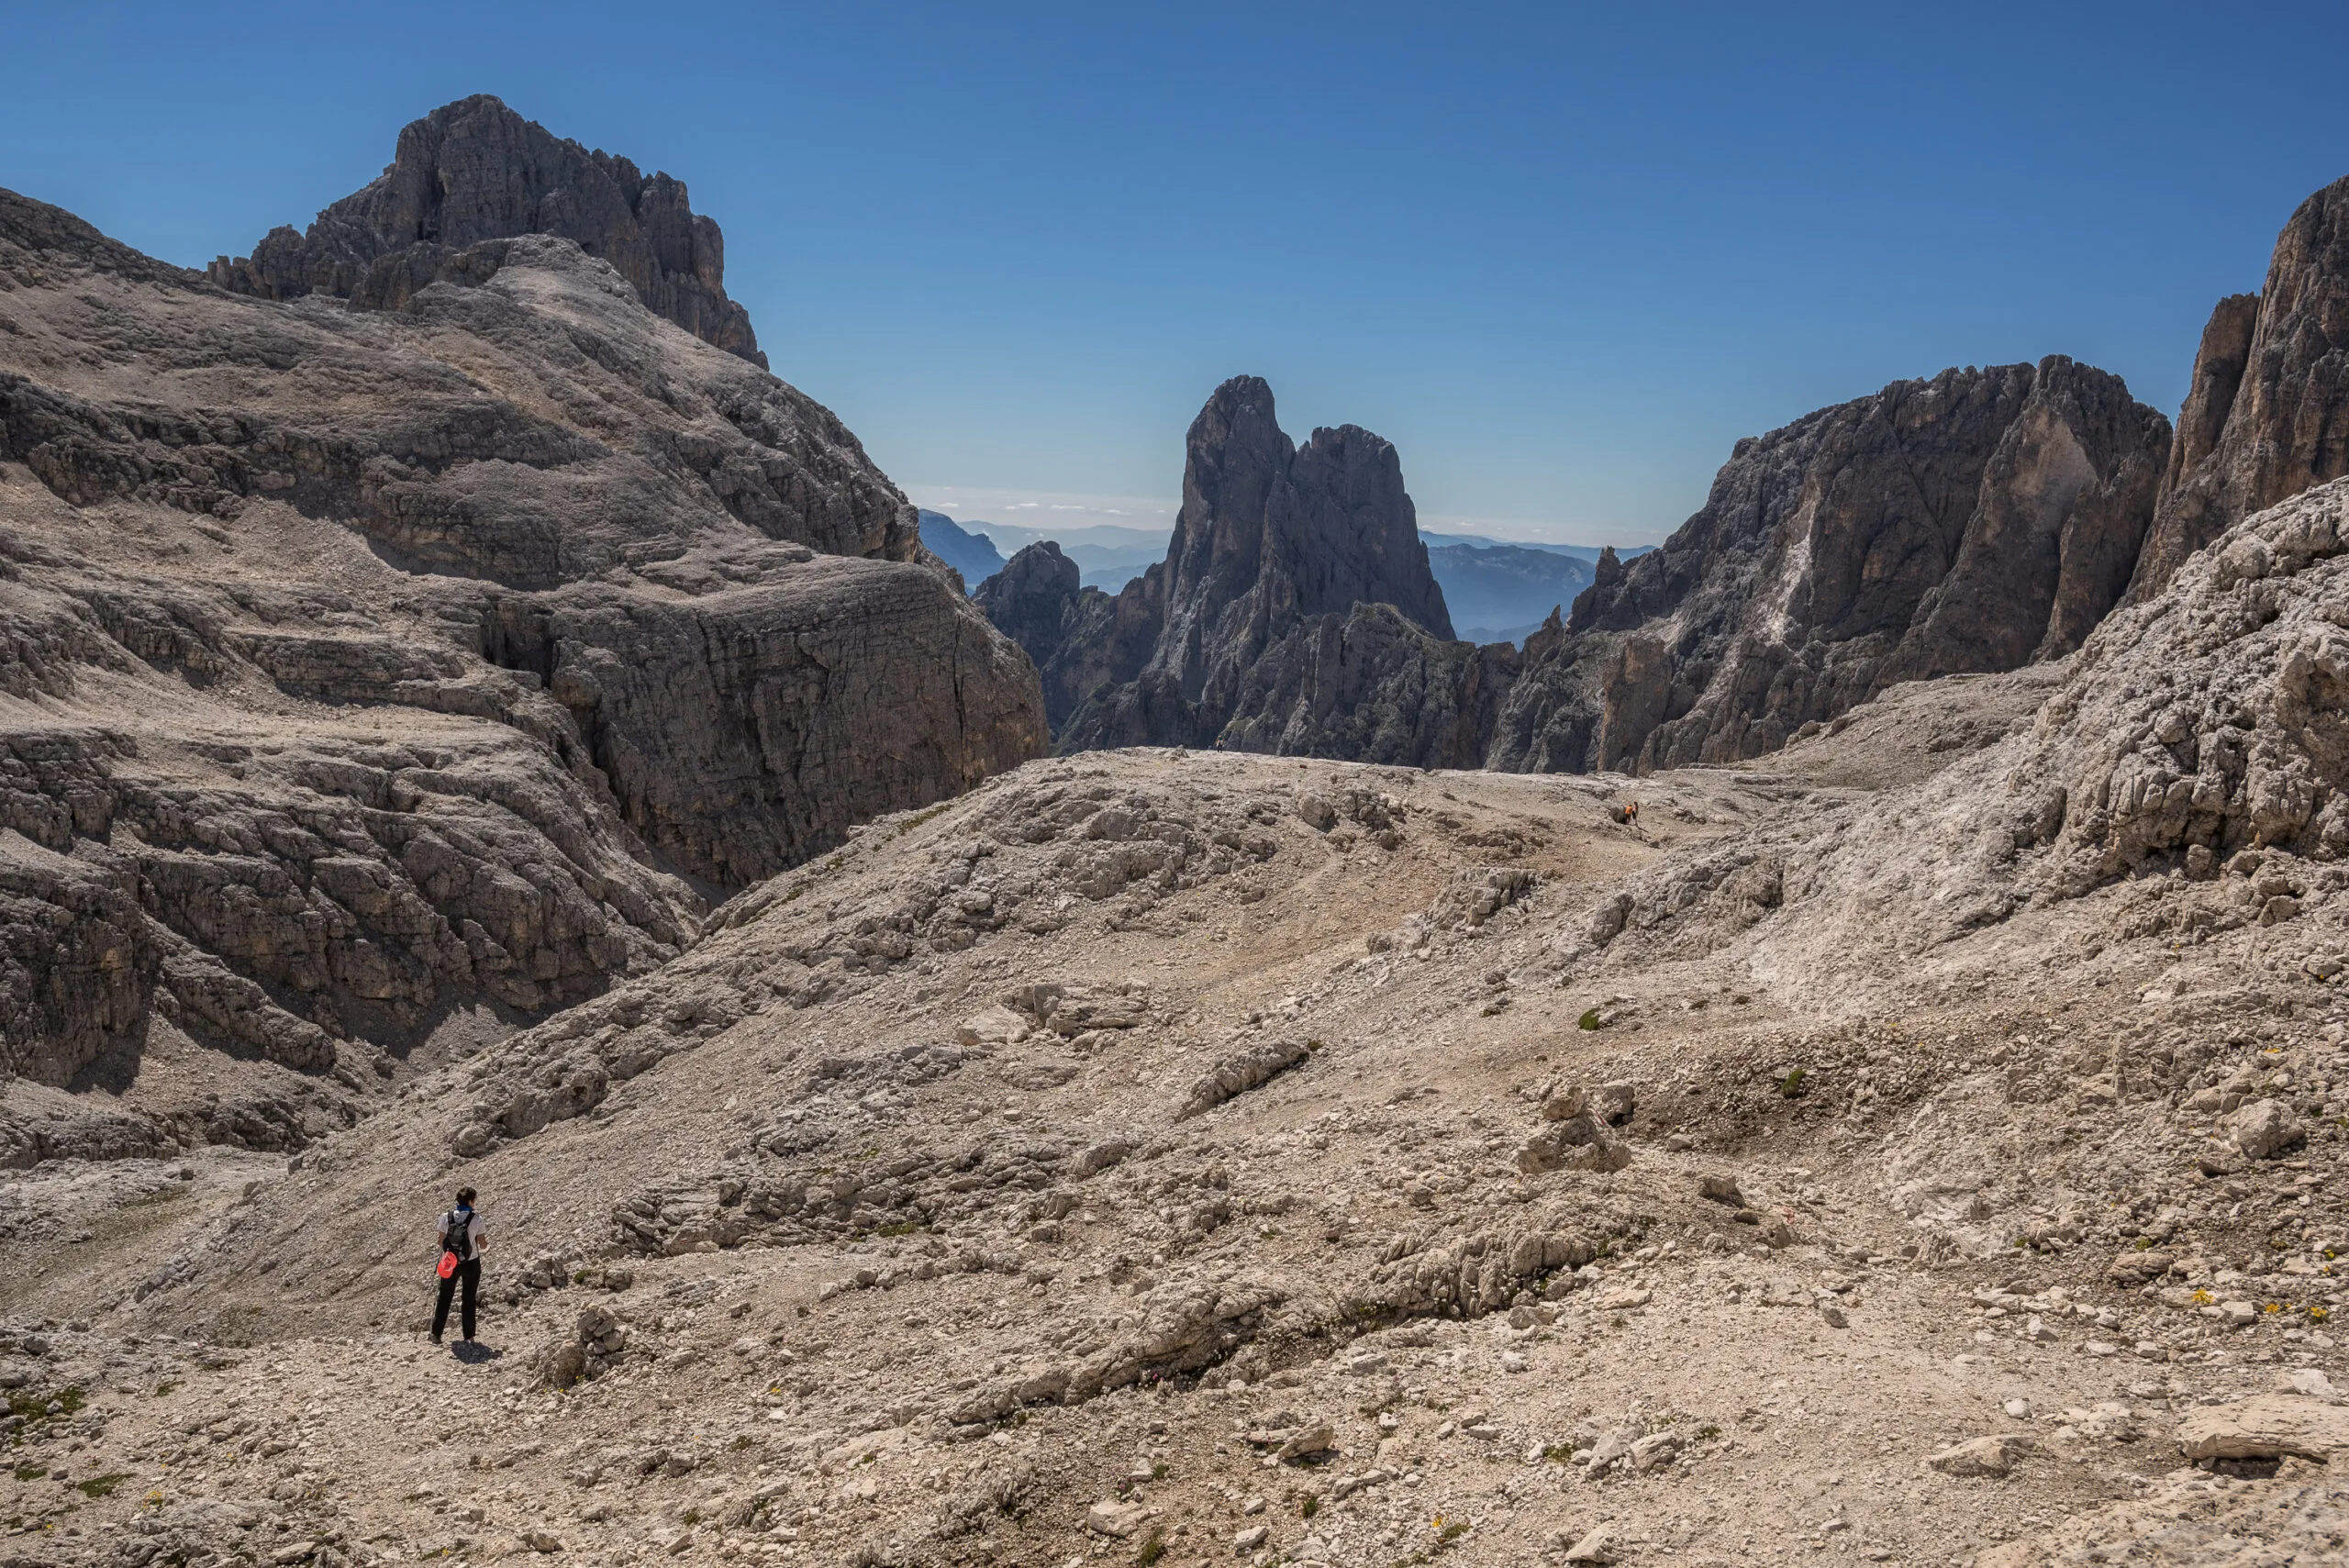 De toppen van de berggroep Pale di San Martino van L naar R, Cima Canali, Cimerlo, Sass Maor, Cima della Madonna, gezien vanaf de Pradidali Basso pas, aan de voet van de Fradusta gletsjer, Dolomieten, Italië.